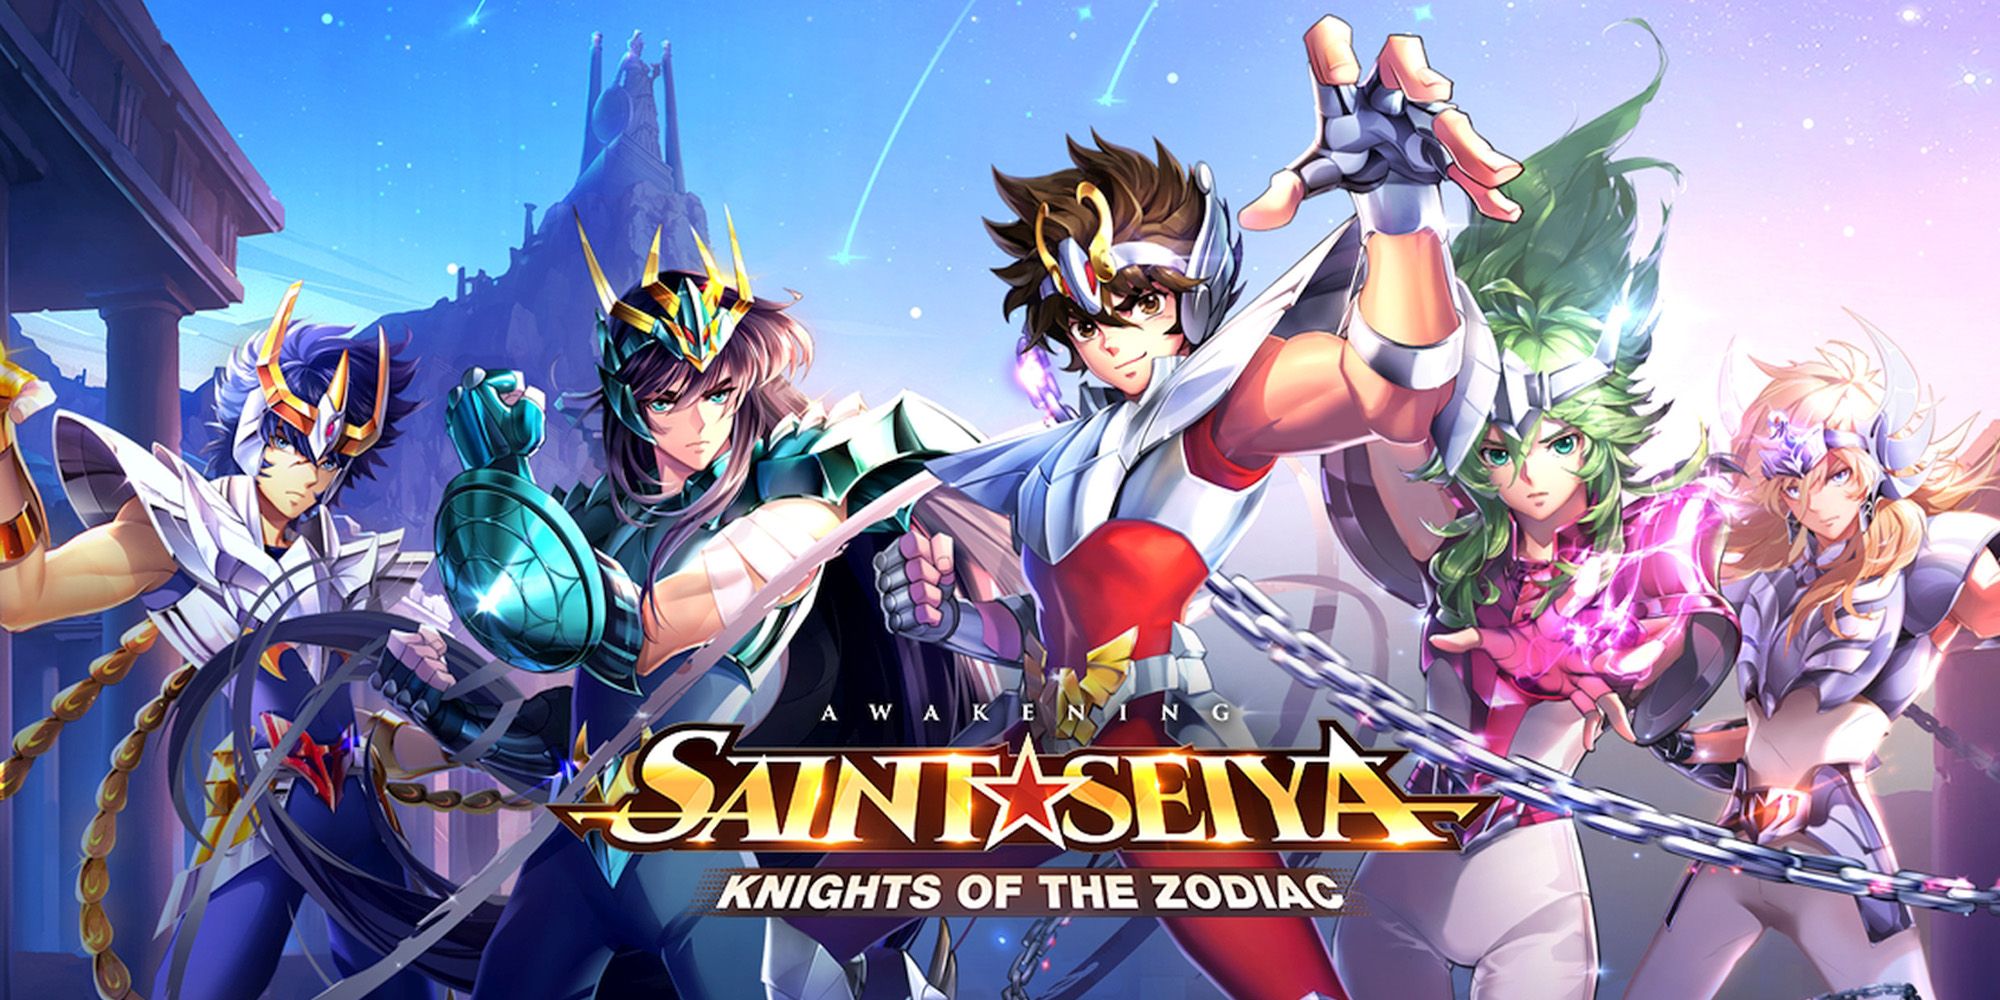 Saint Seiya Saint Seiya Knights of the Zodiac  MyAnimeListnet